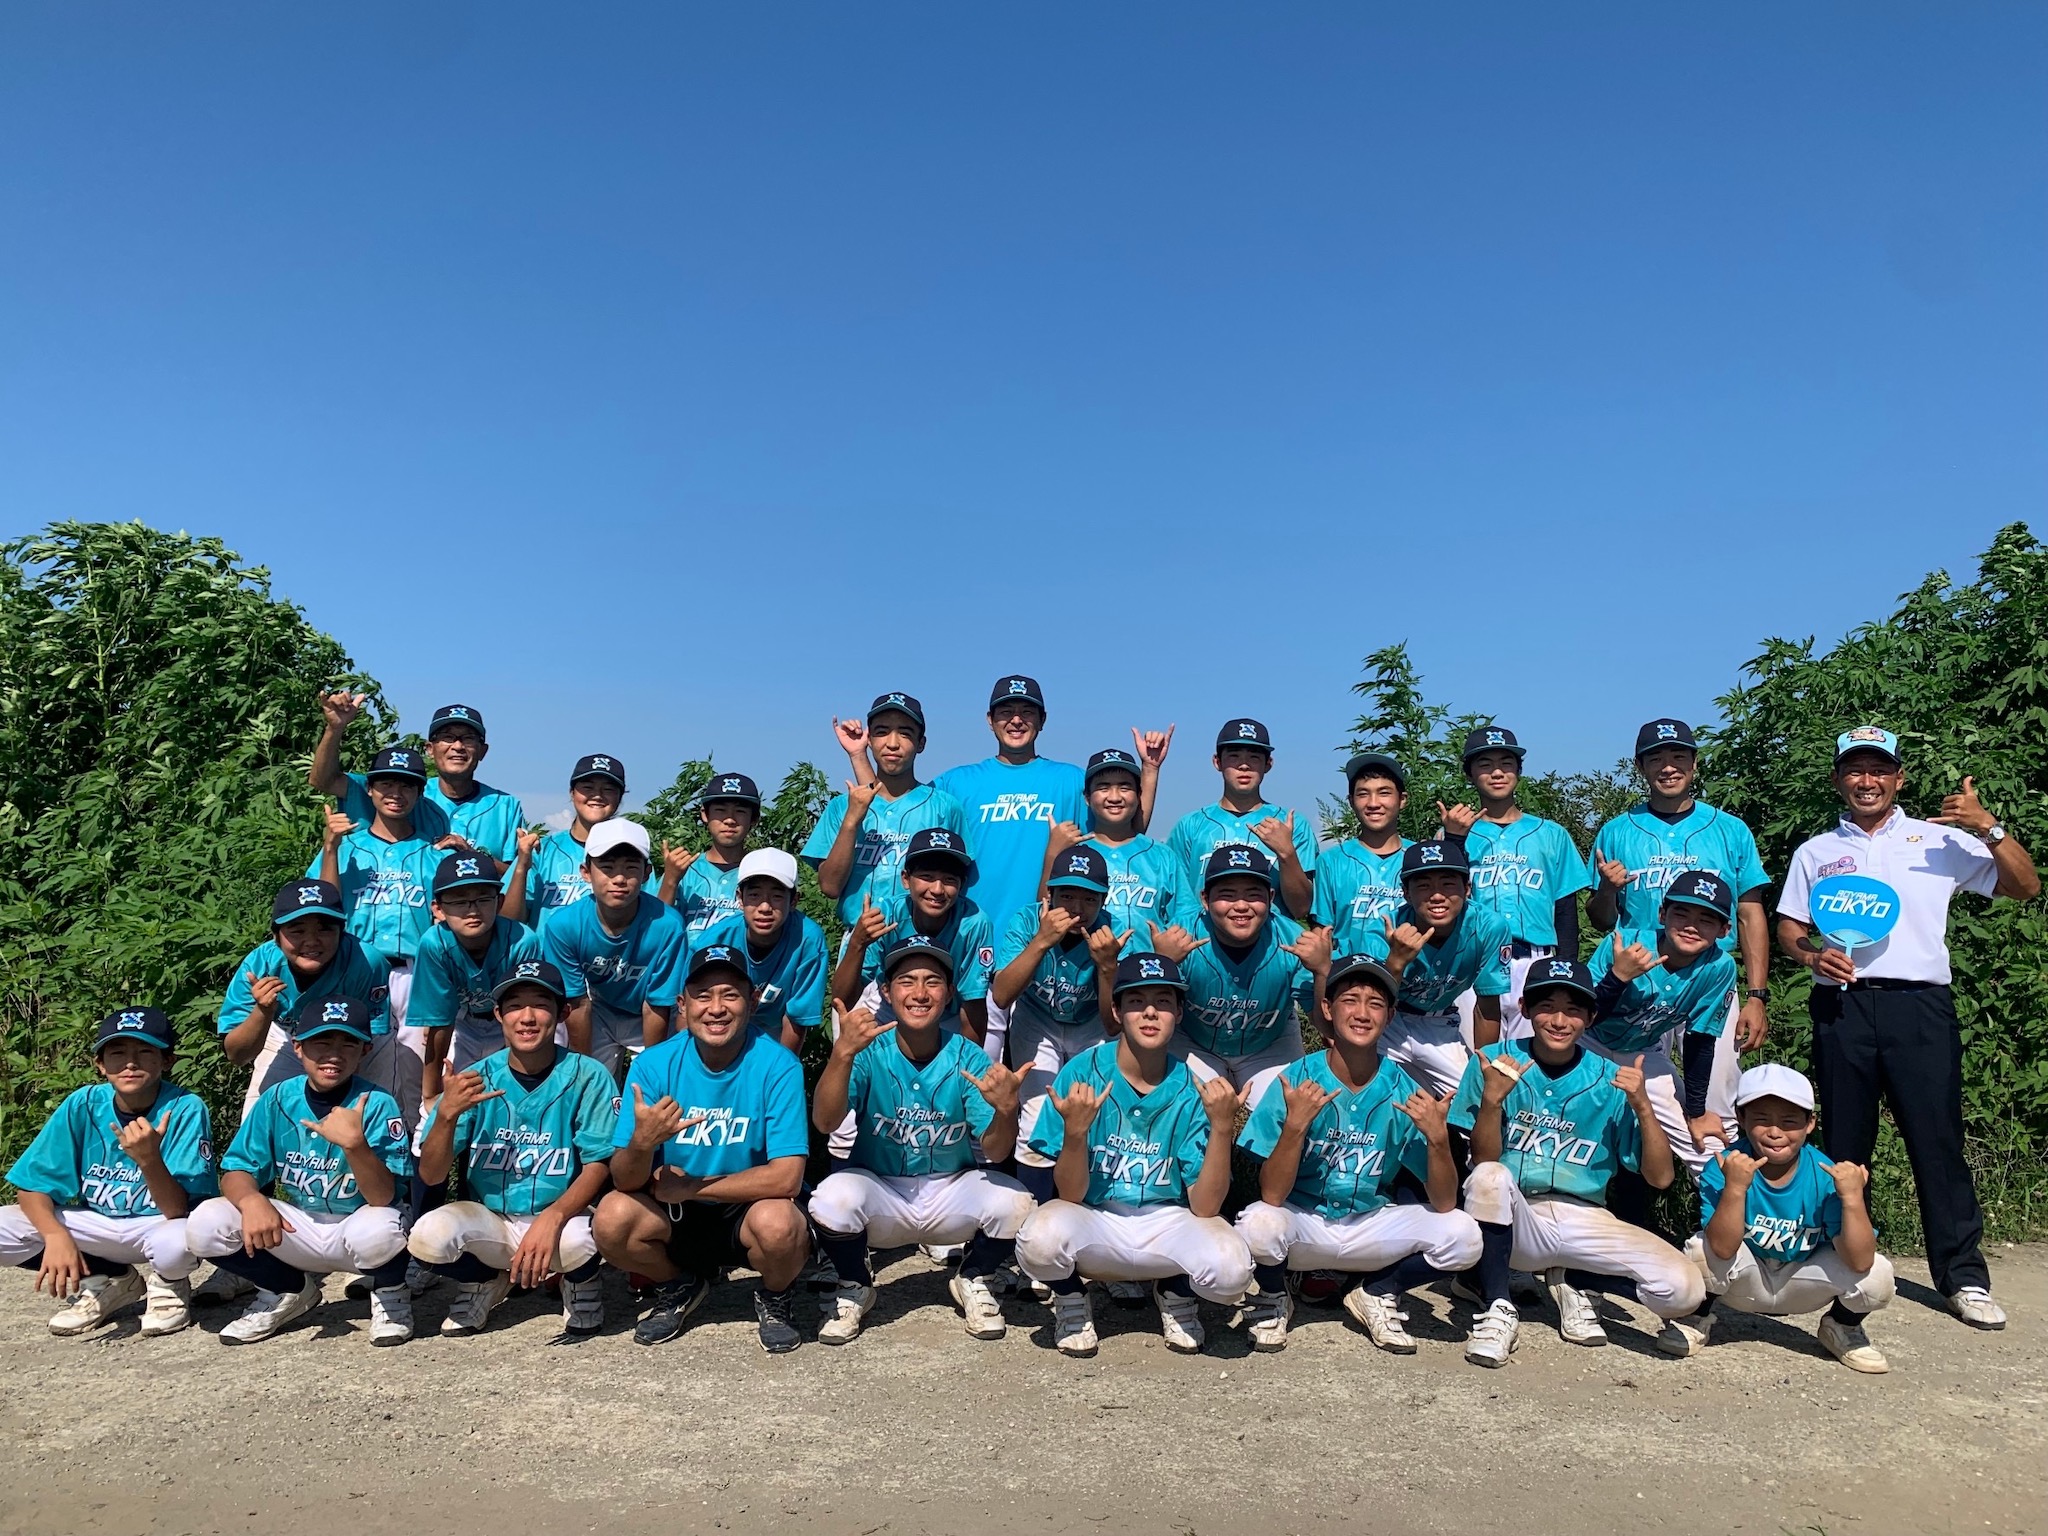 青山東京ボーイズ 岩隈久志率いる中学硬式野球チーム メジャーリーグ プロ野球経験者たちが揃う技術と心を育む野球チーム